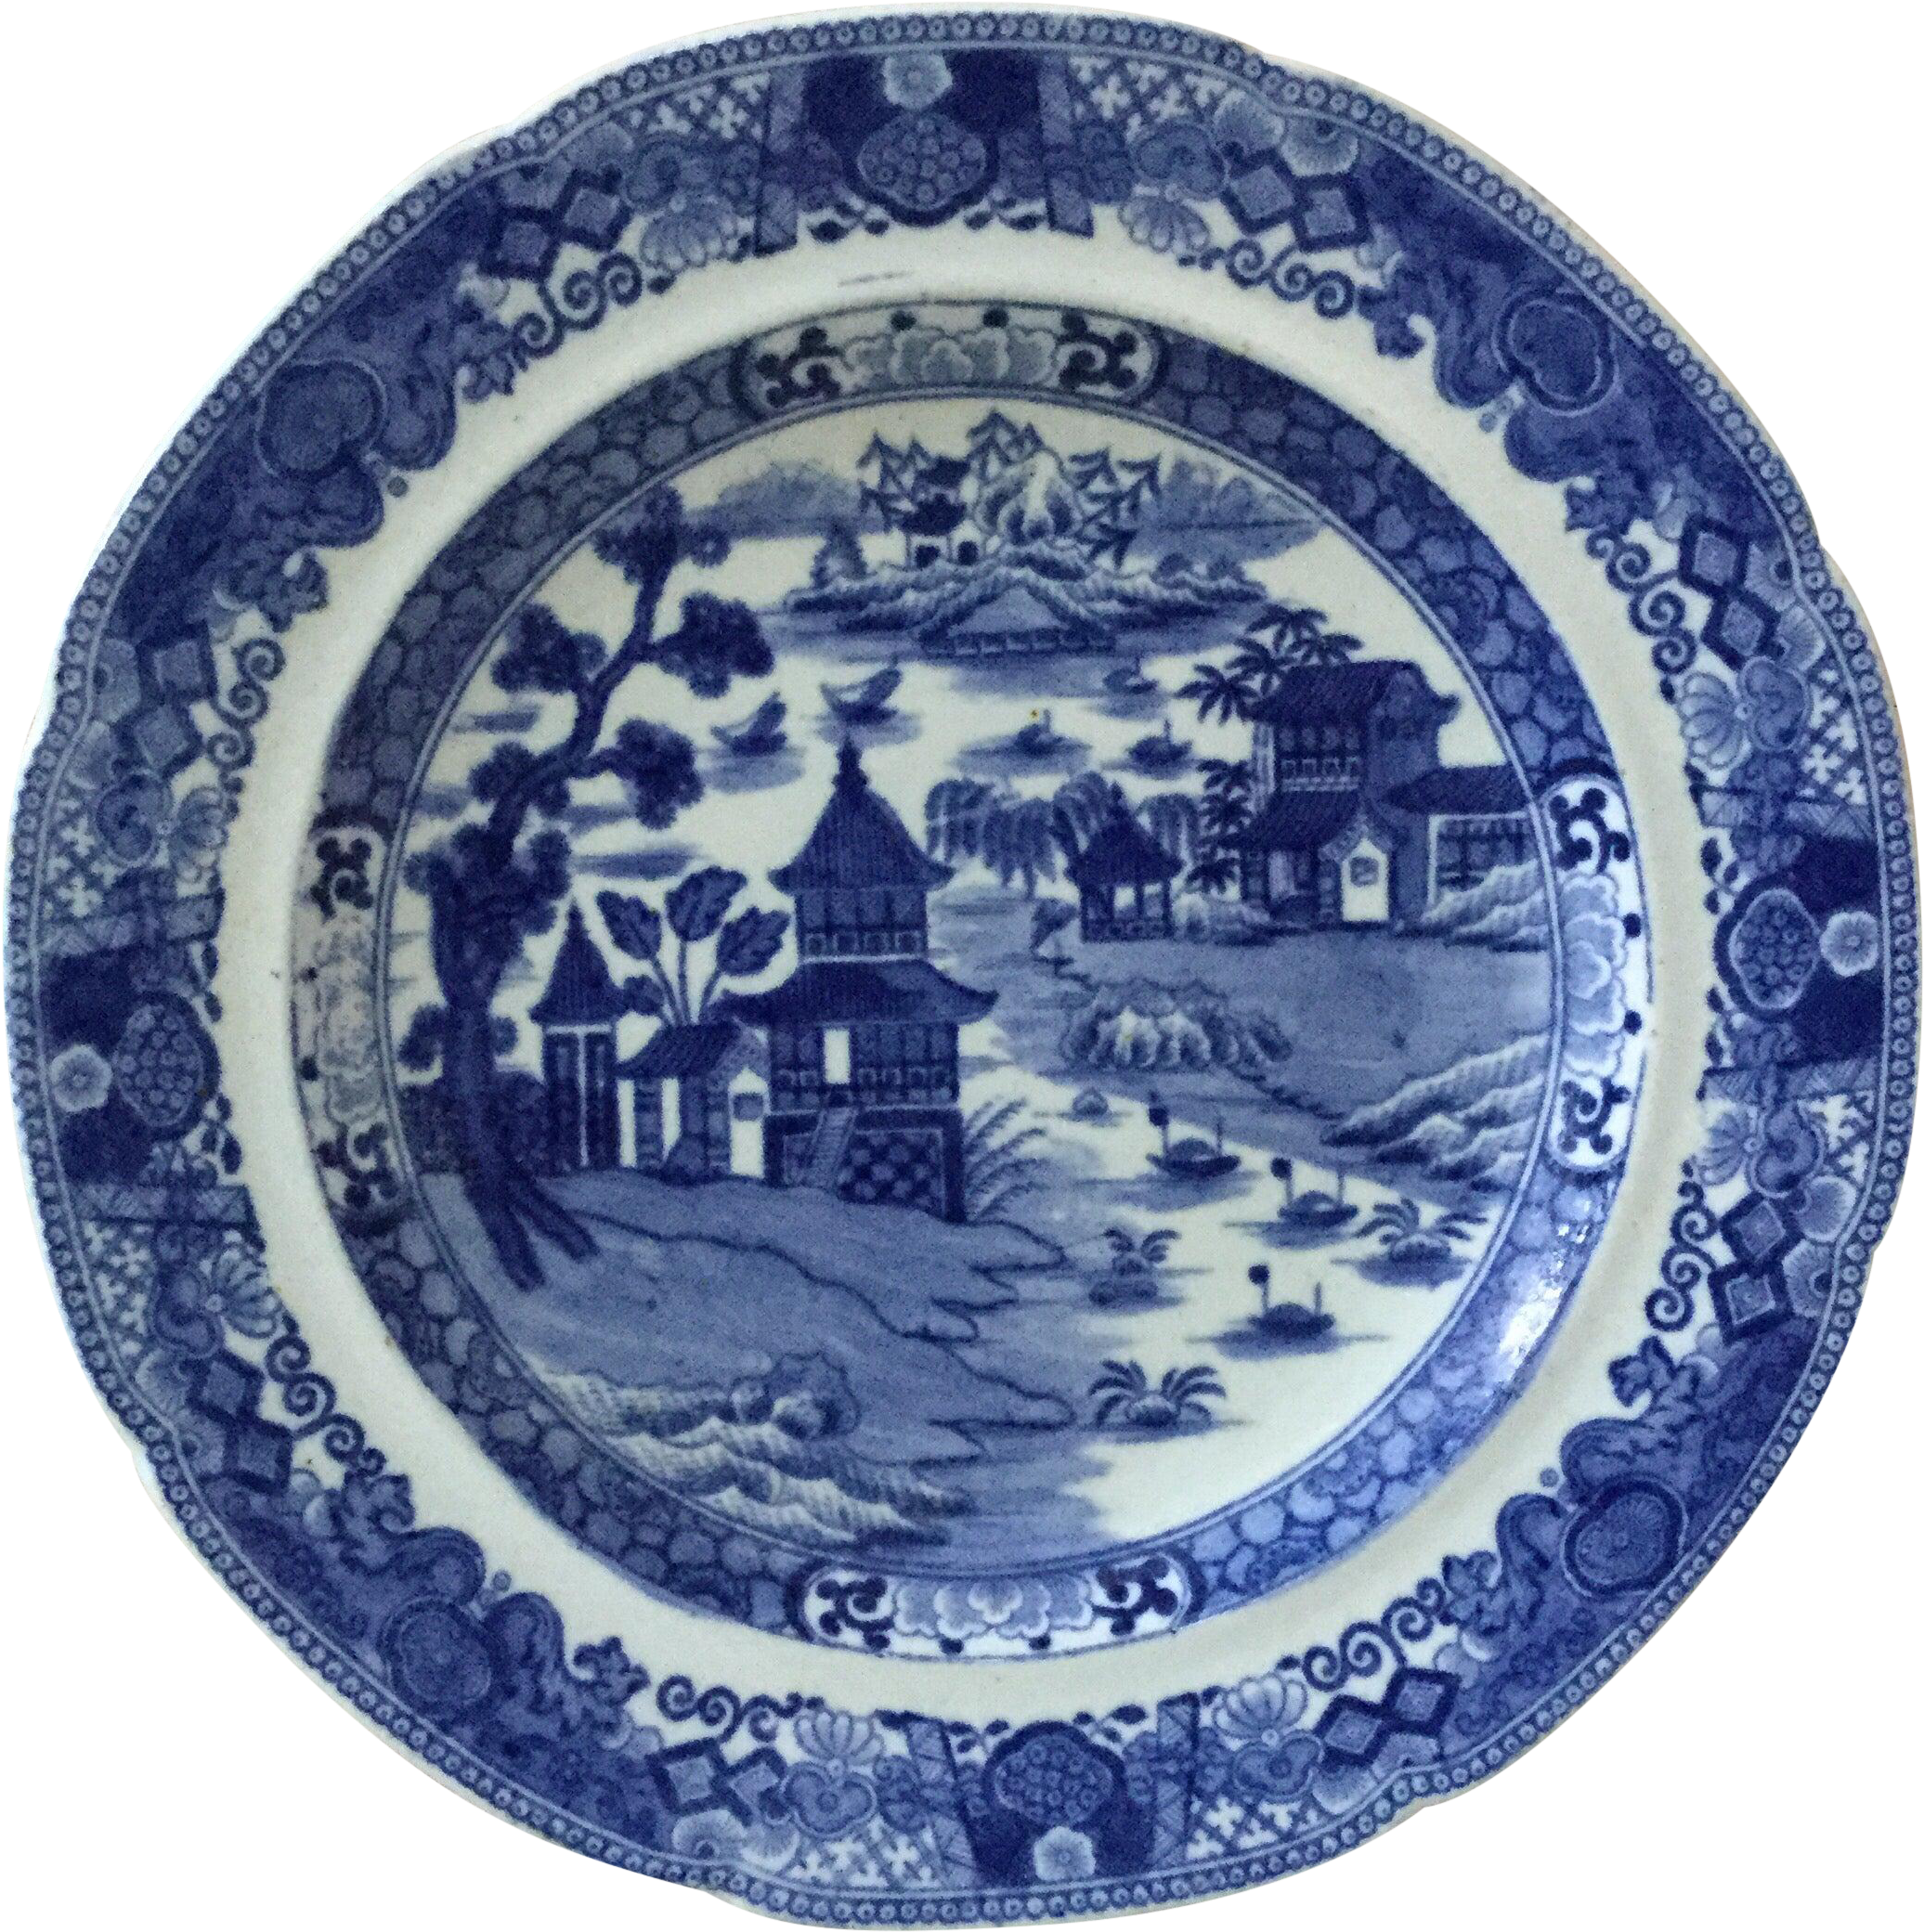 Porselen biru dan putih gaya Cina Inggris abad ke-19, porselen biru dan putih